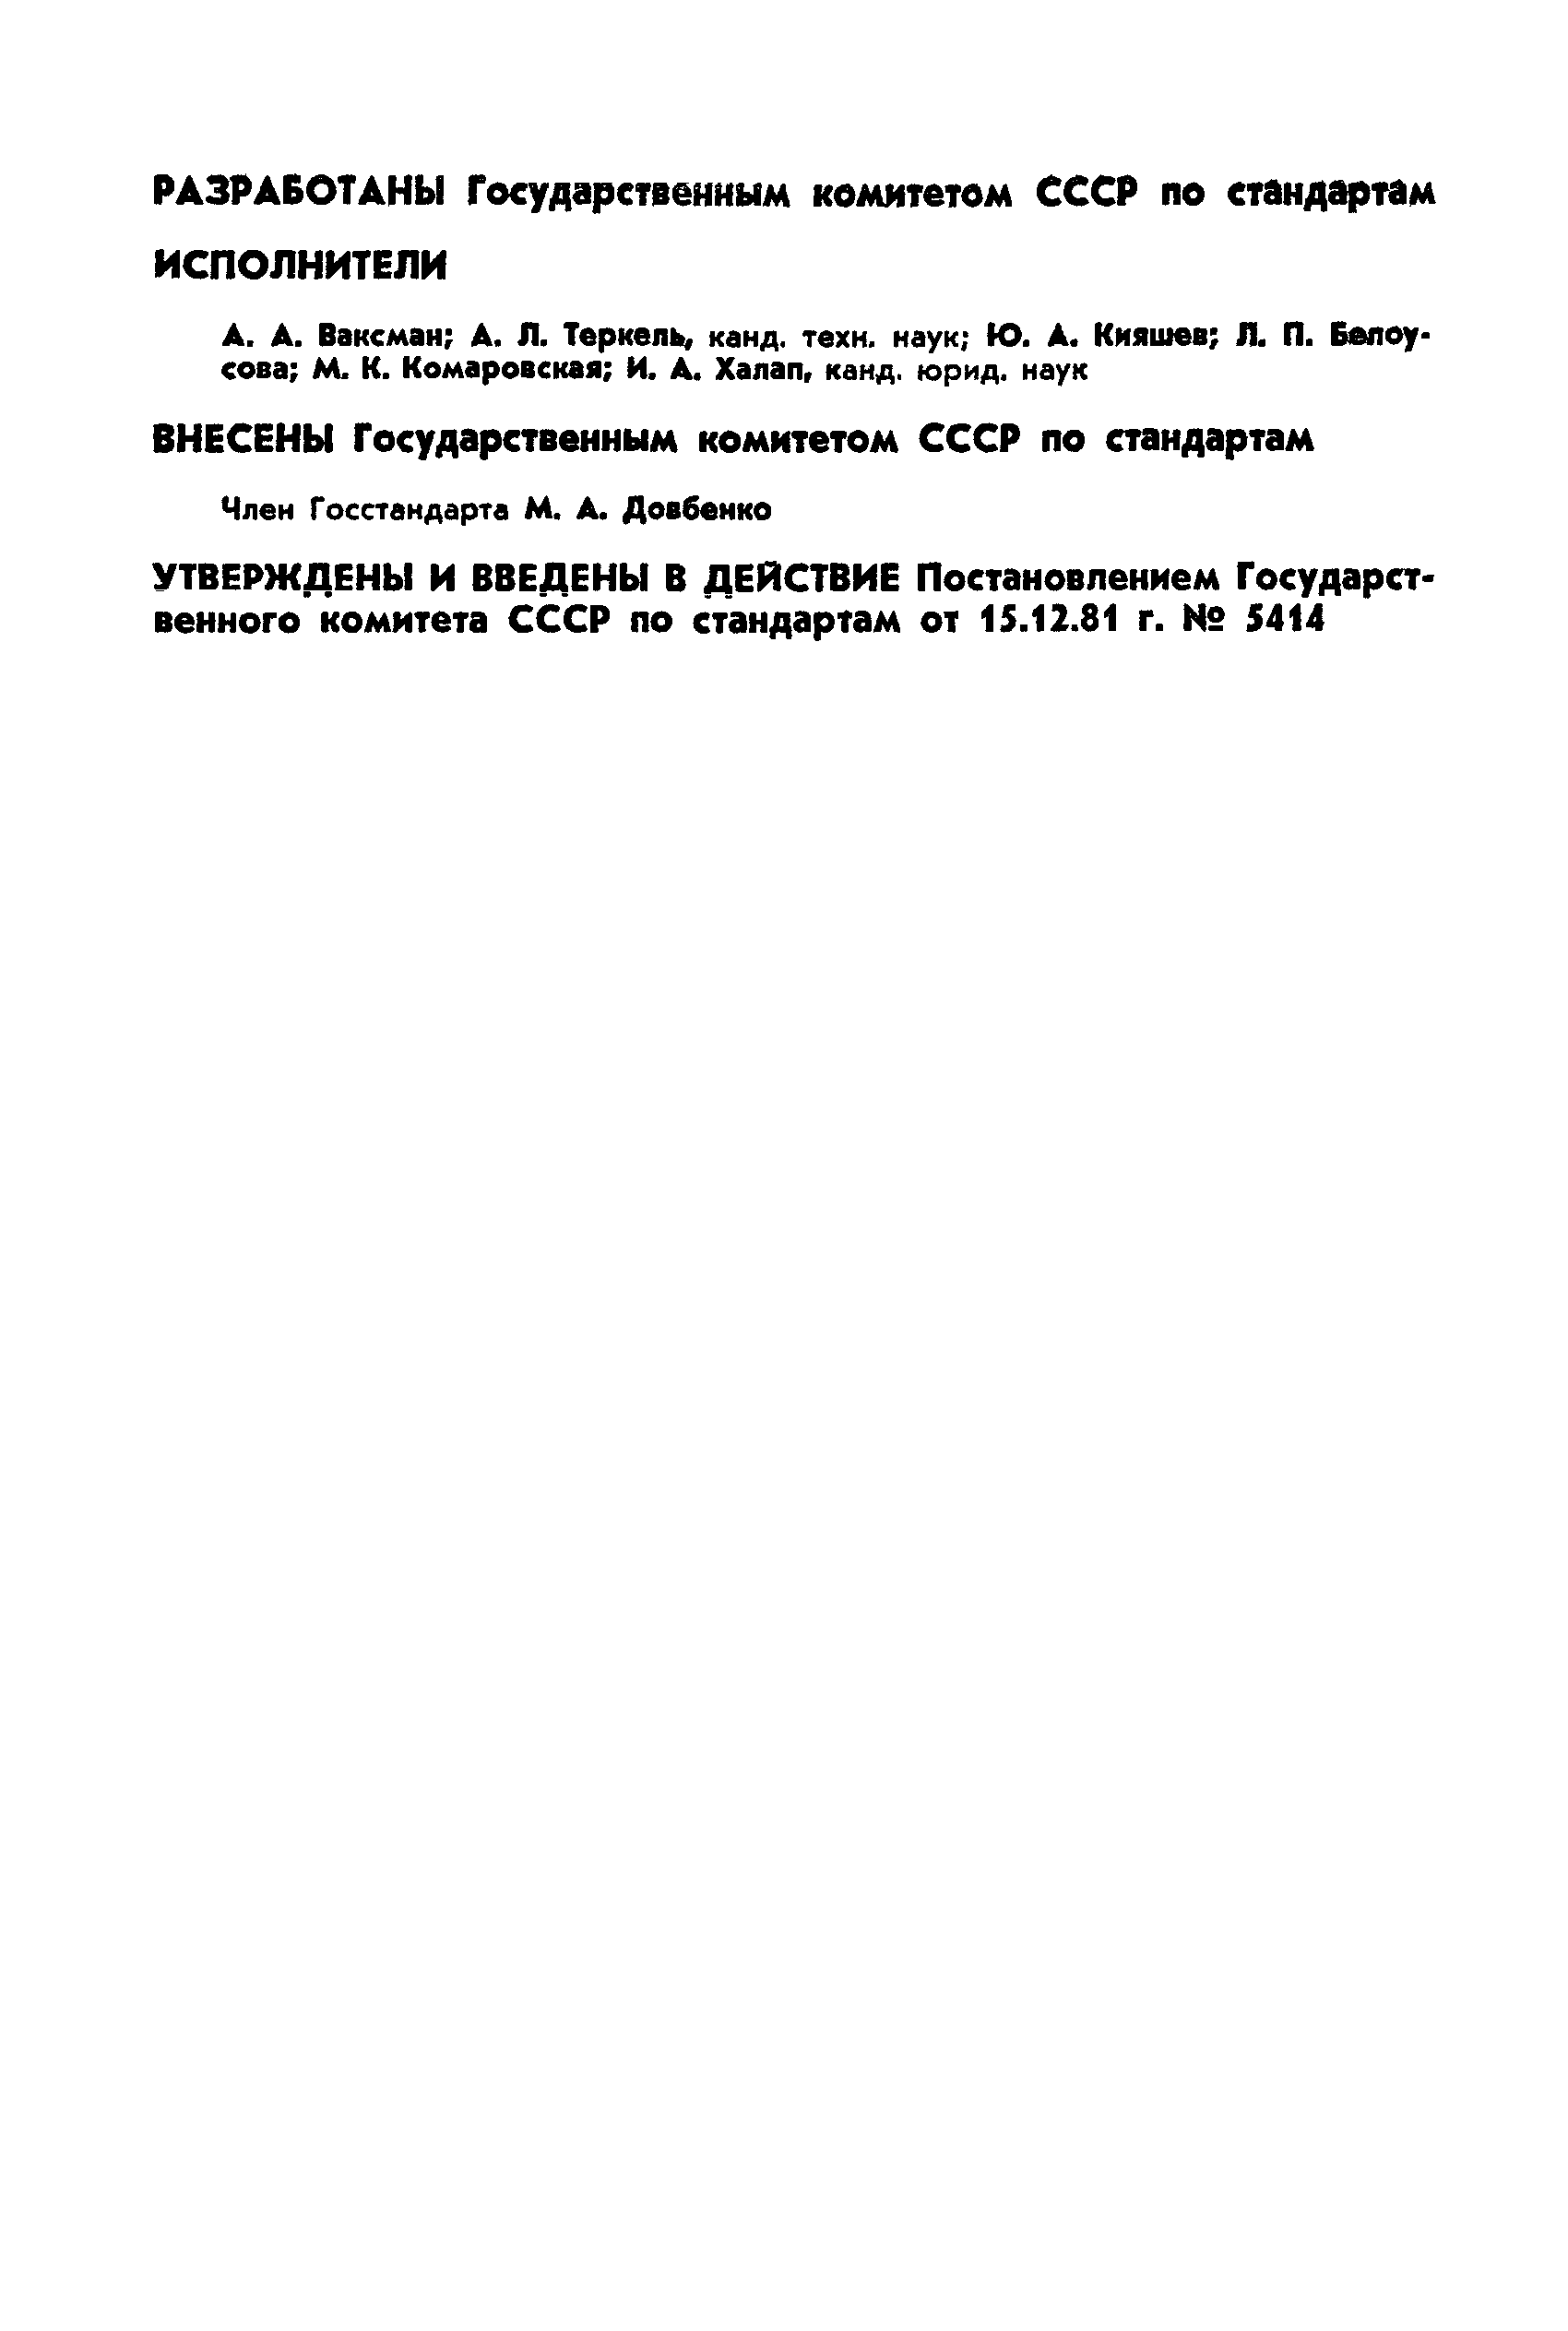 РД 50-285-81